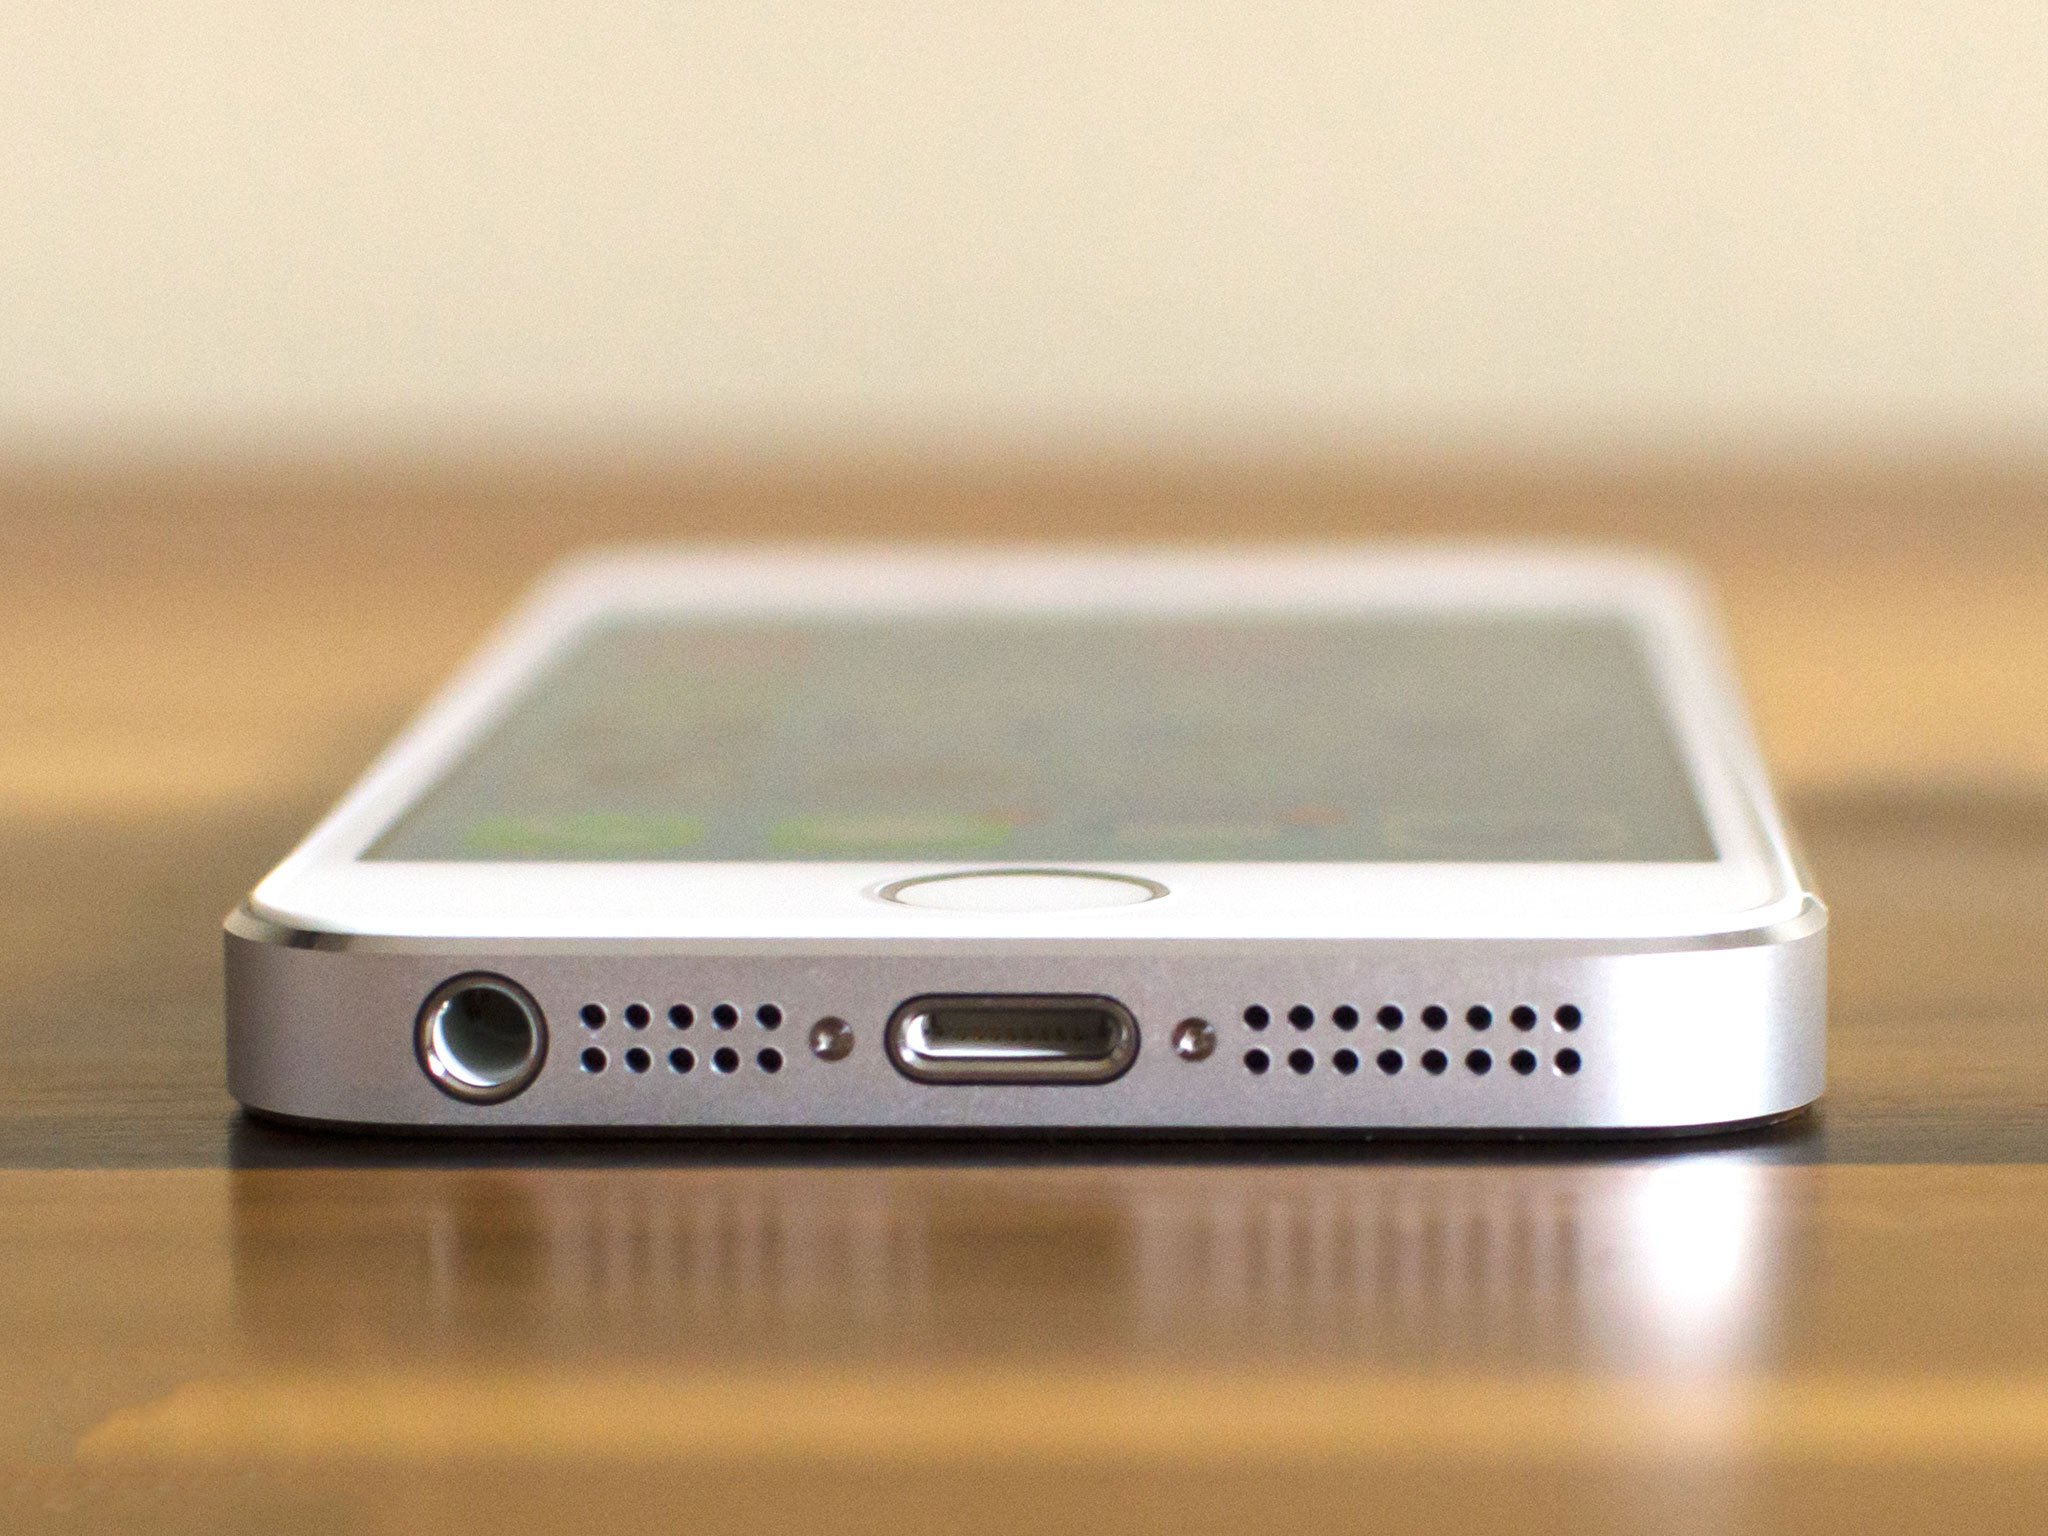 Comment remplacer le haut-parleur d'un iPhone 5s